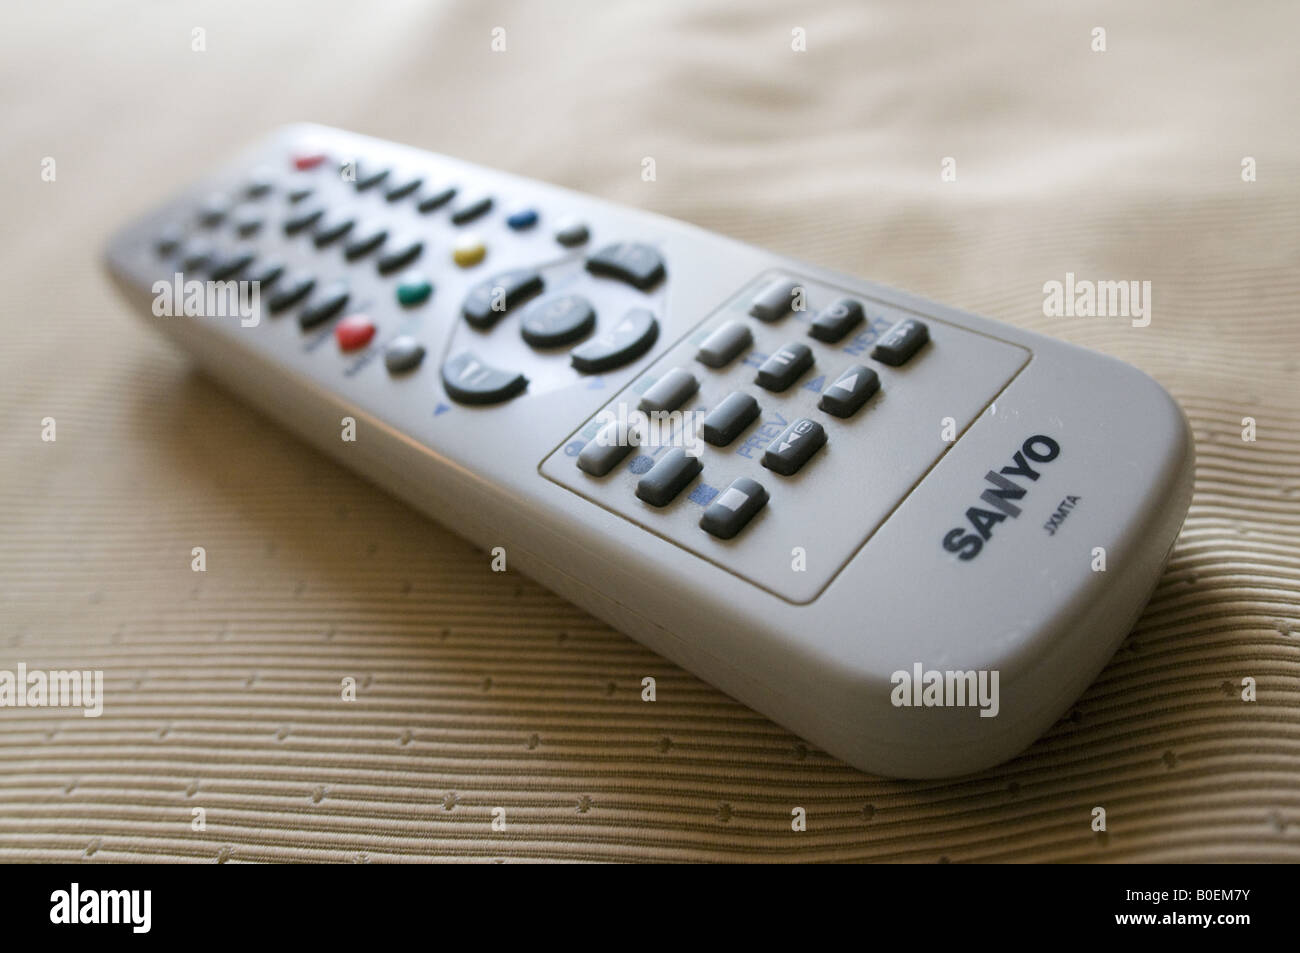 Sanyo remote control Stock Photo